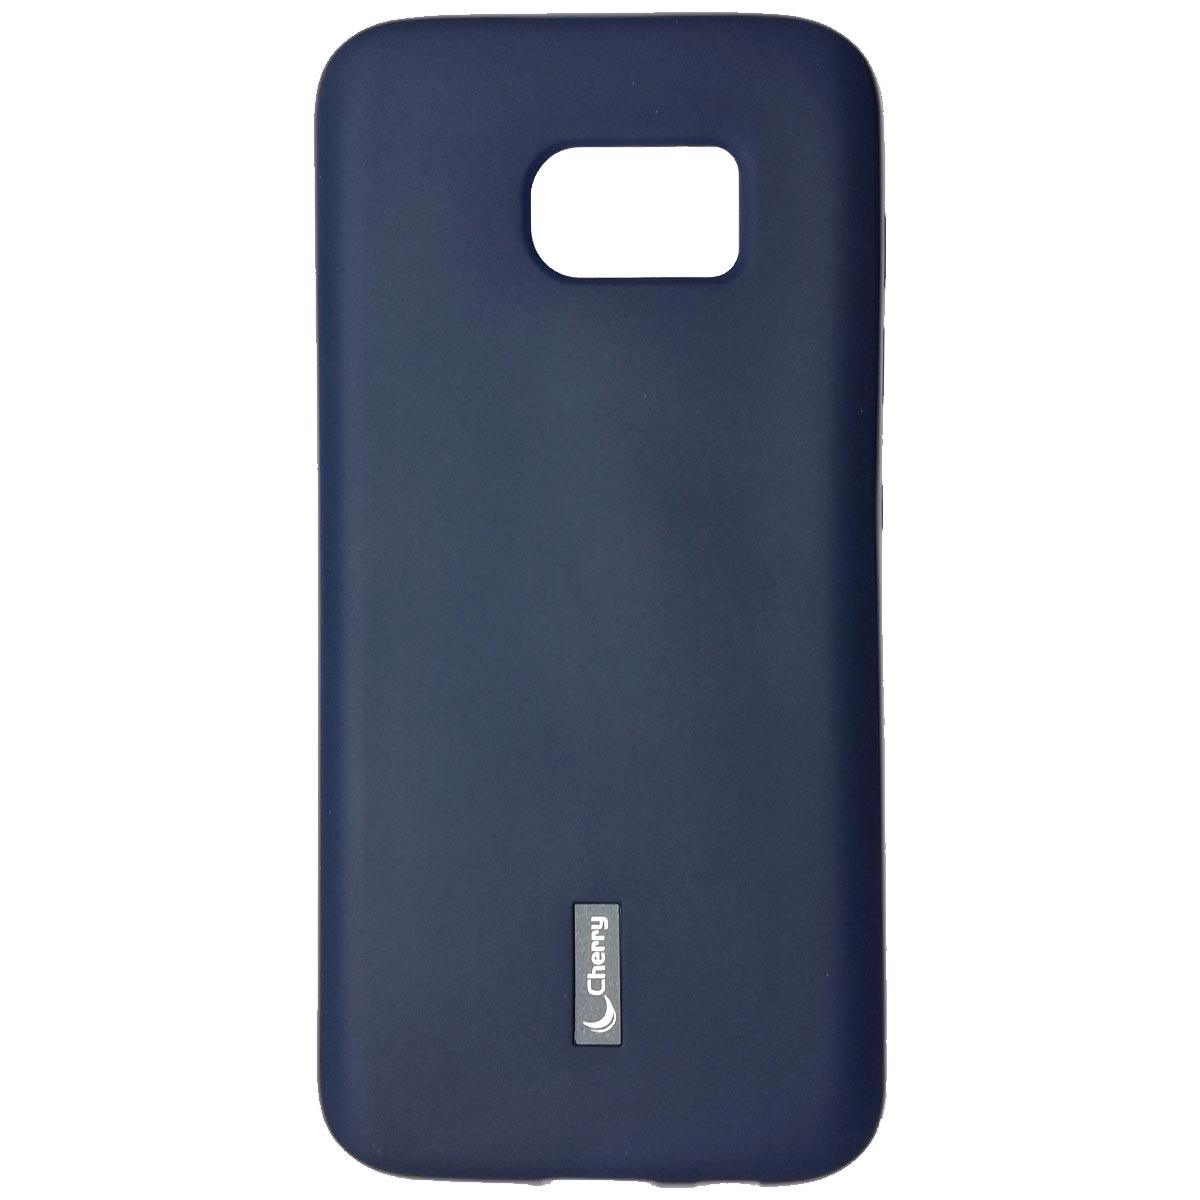 Чехол накладка Cherry для SAMSUNG Galaxy S7 Edge (SM-G935), силикон, цвет синий.